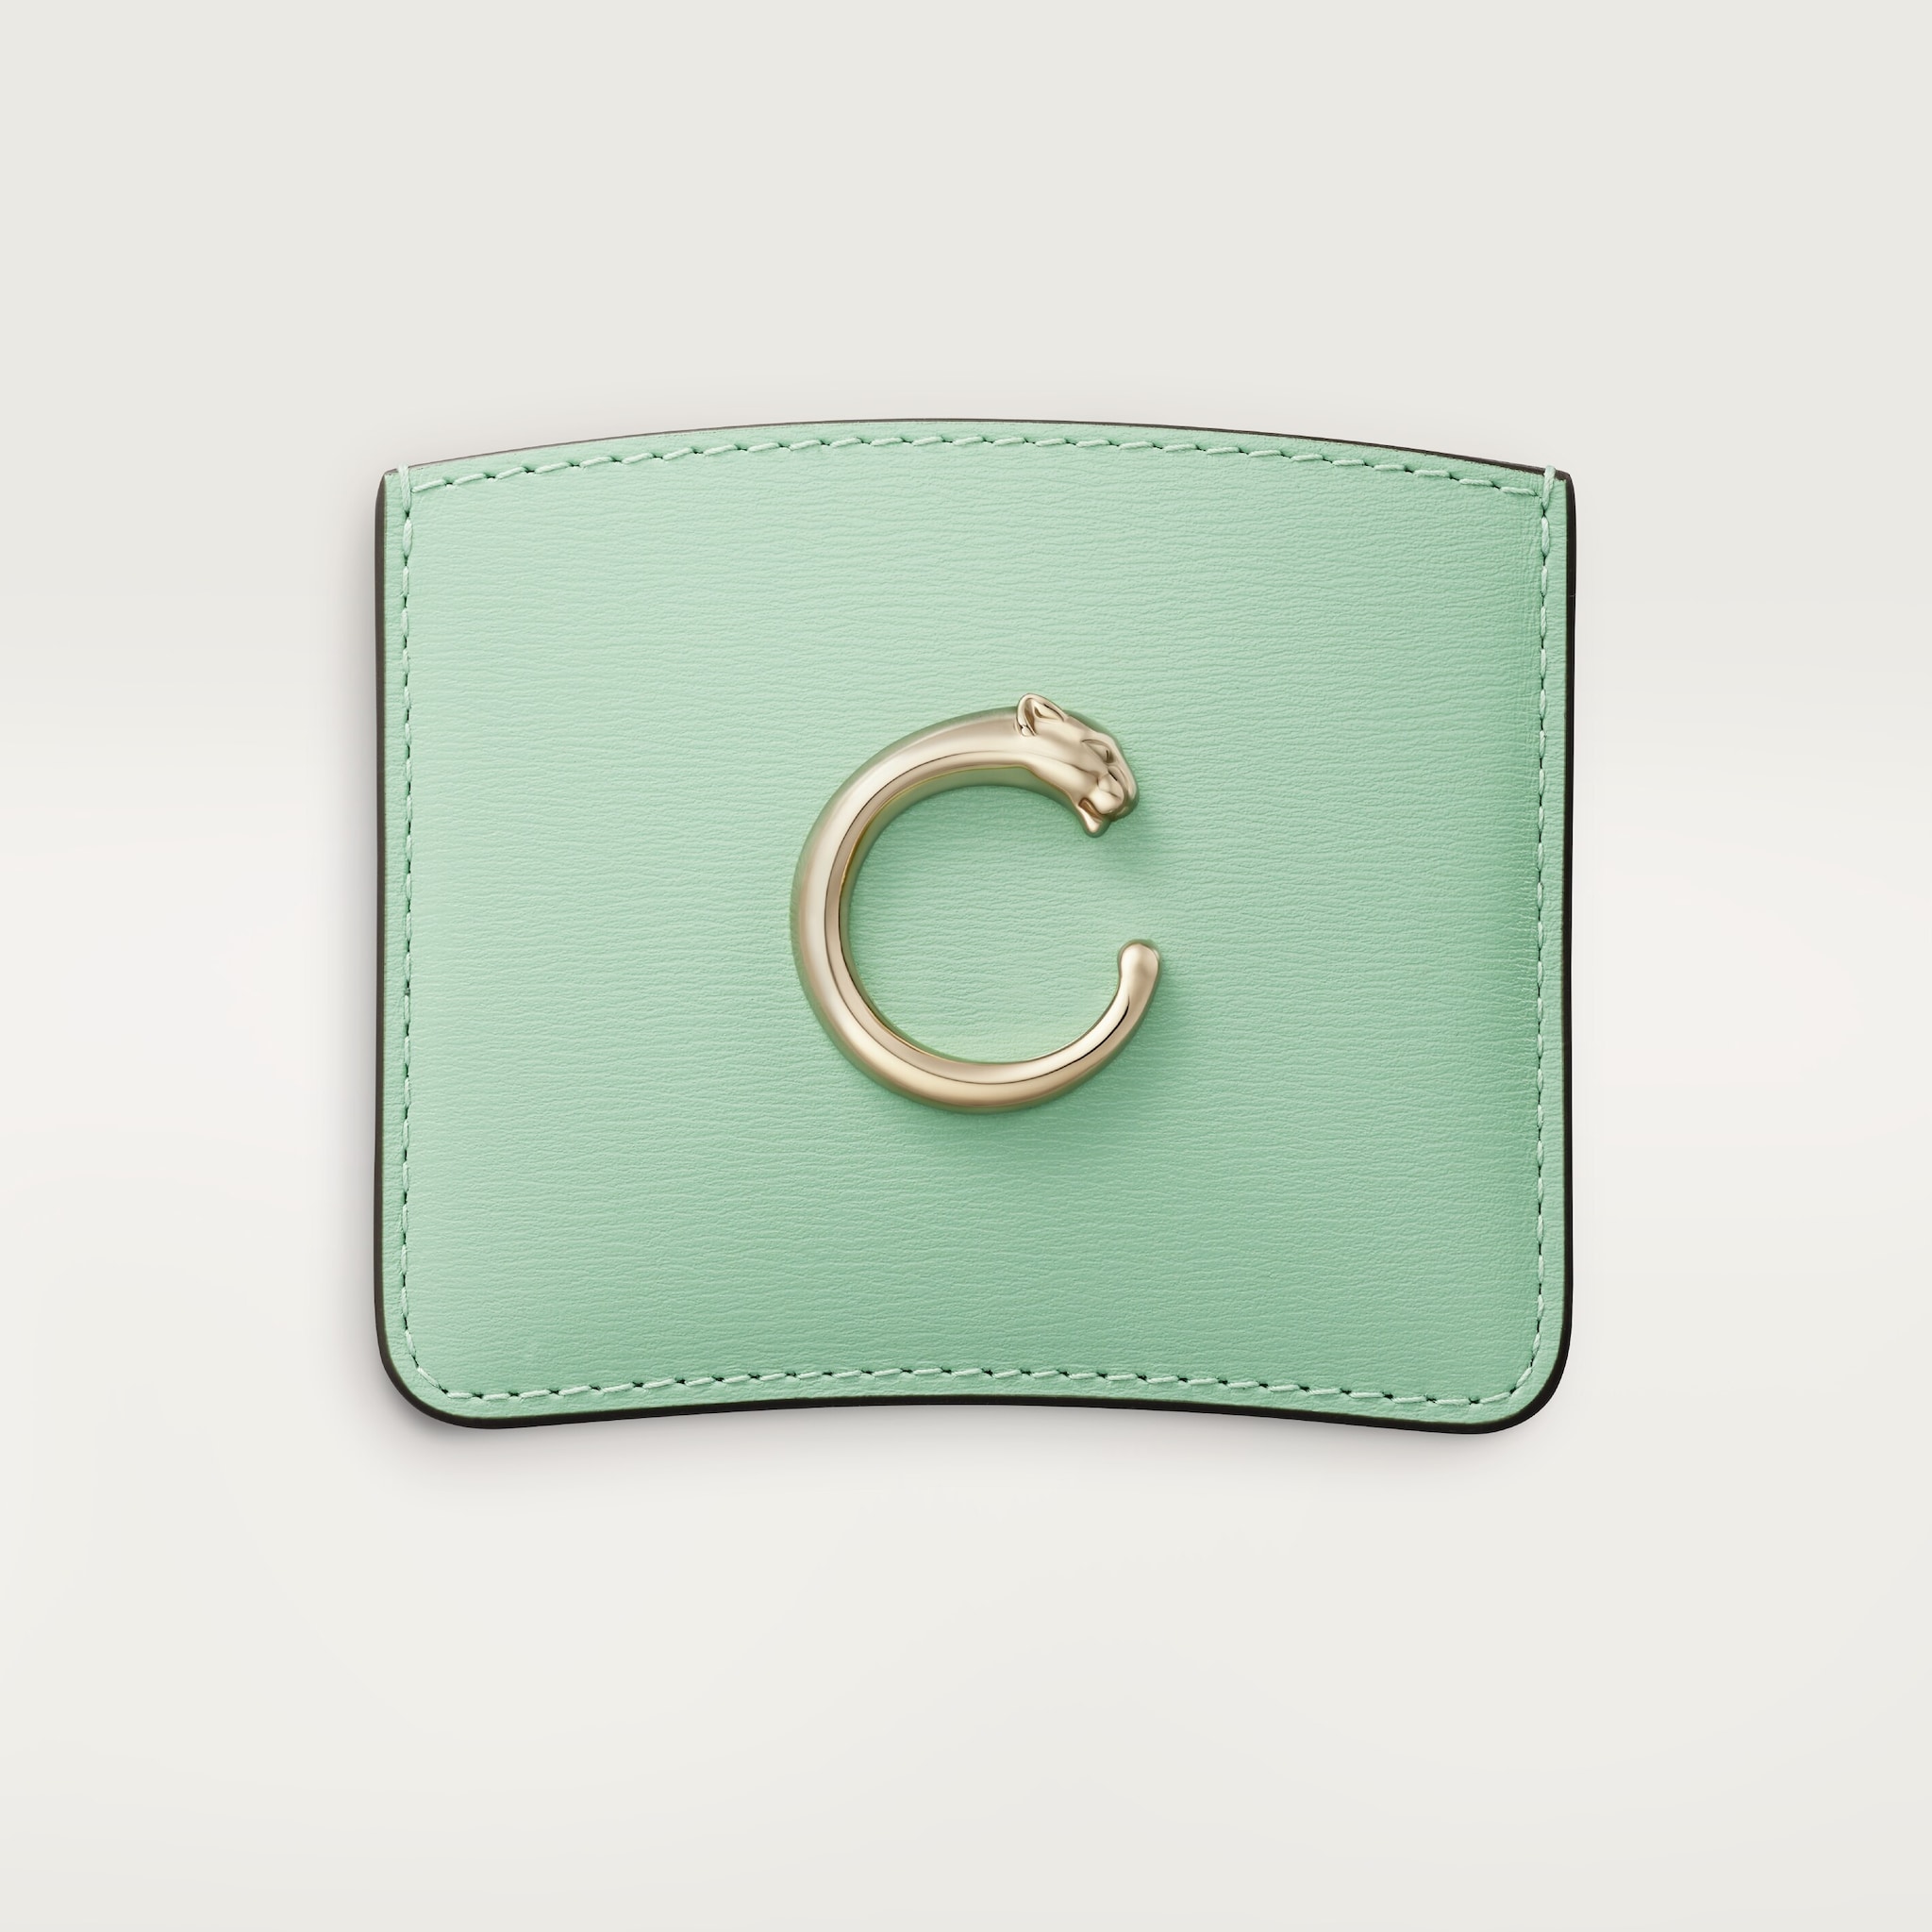 Simple card holder, Panthère de CartierSage green calfskin, golden finish